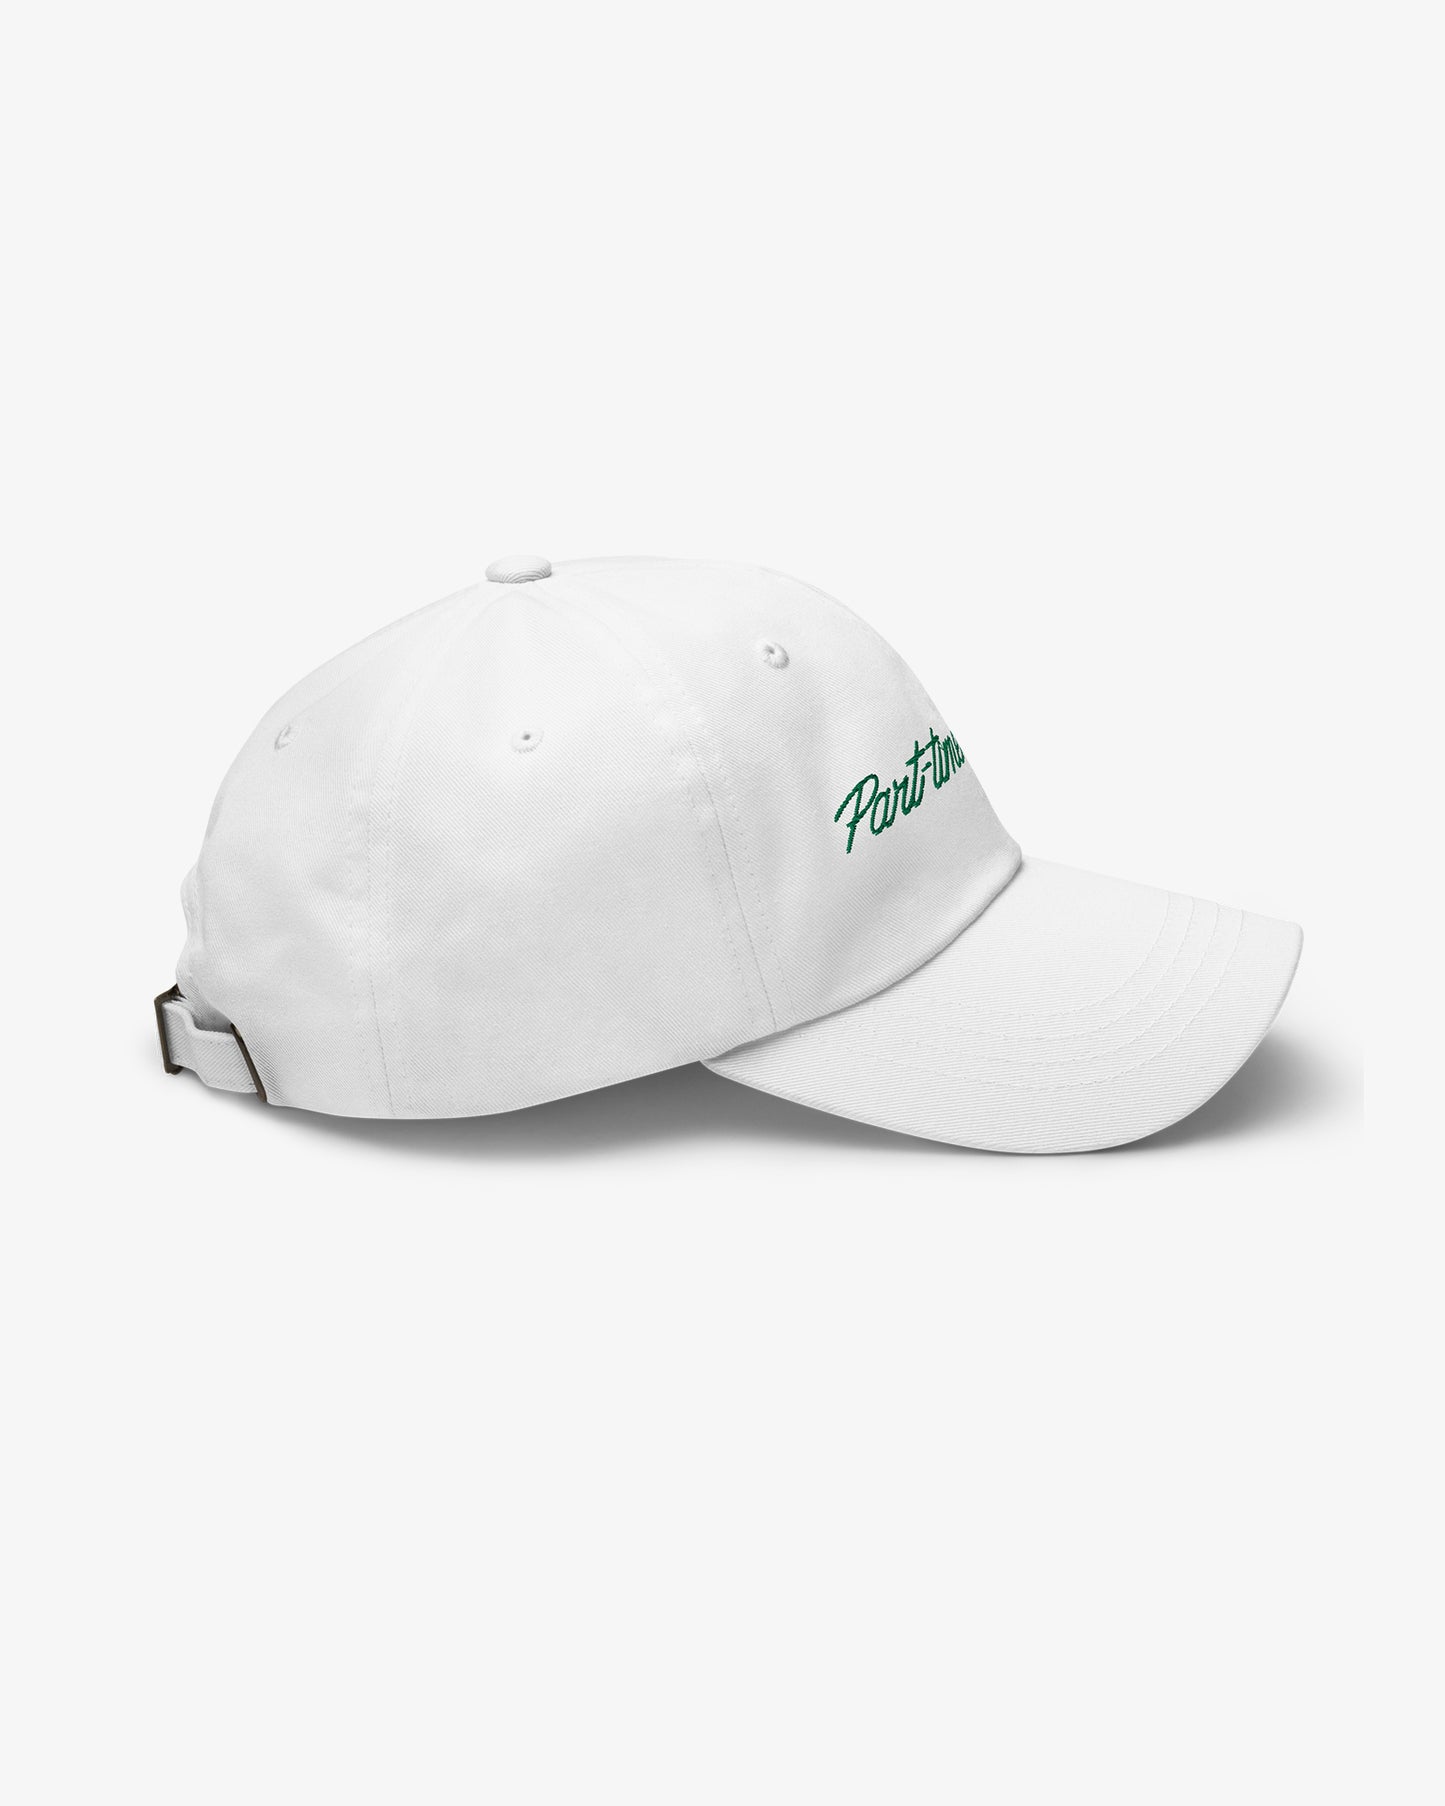 Lover Script Dad Hat - White/Green